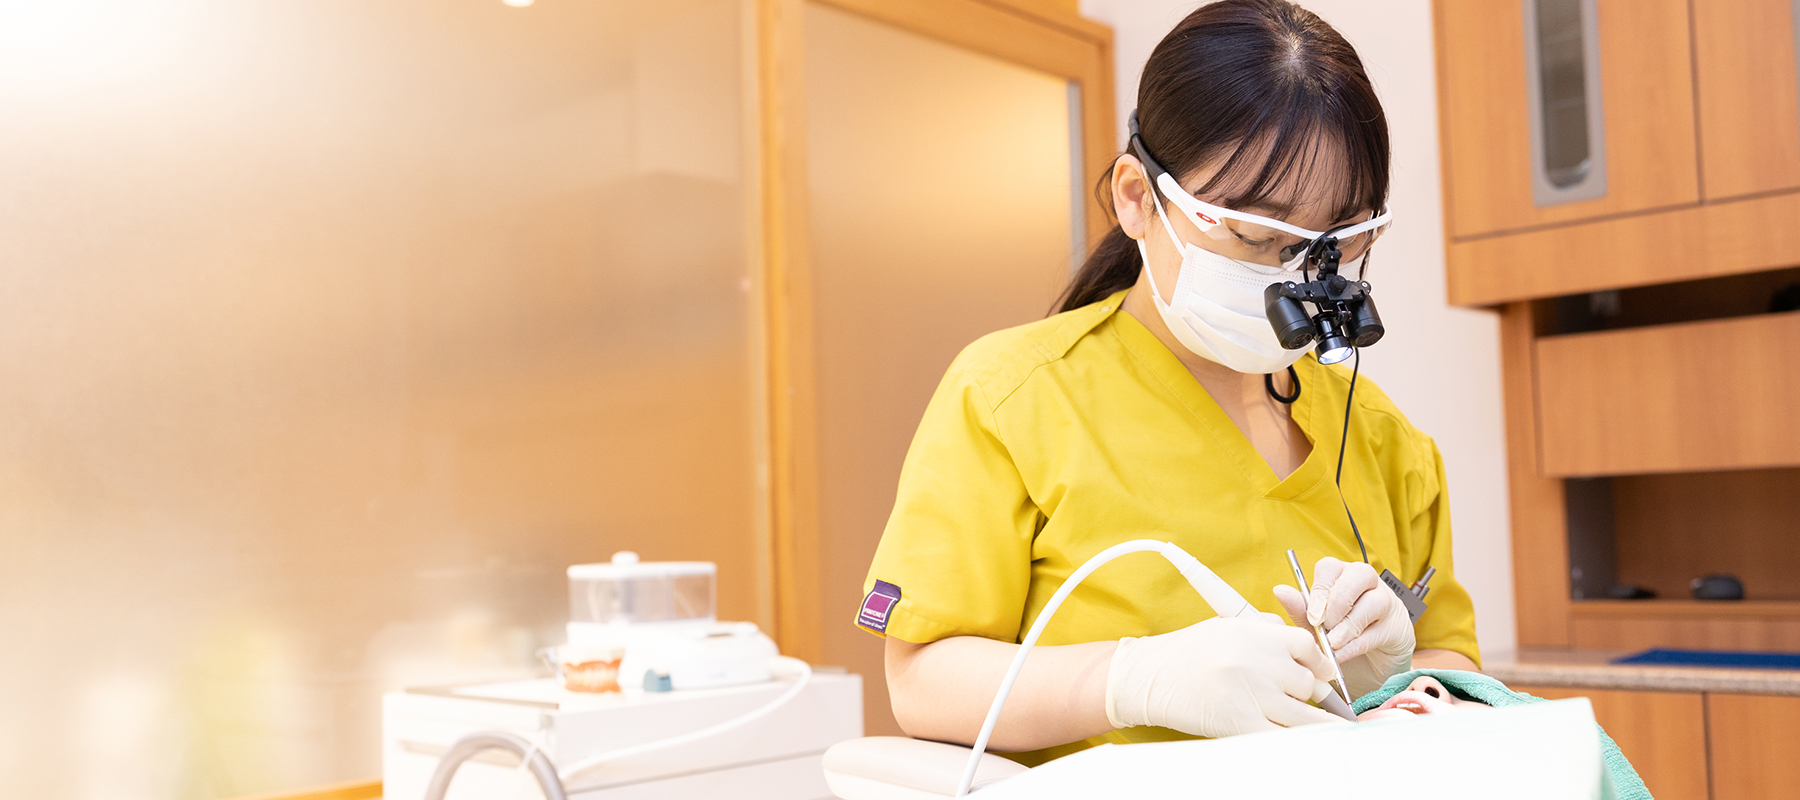 日本での歯科衛生士の認知について